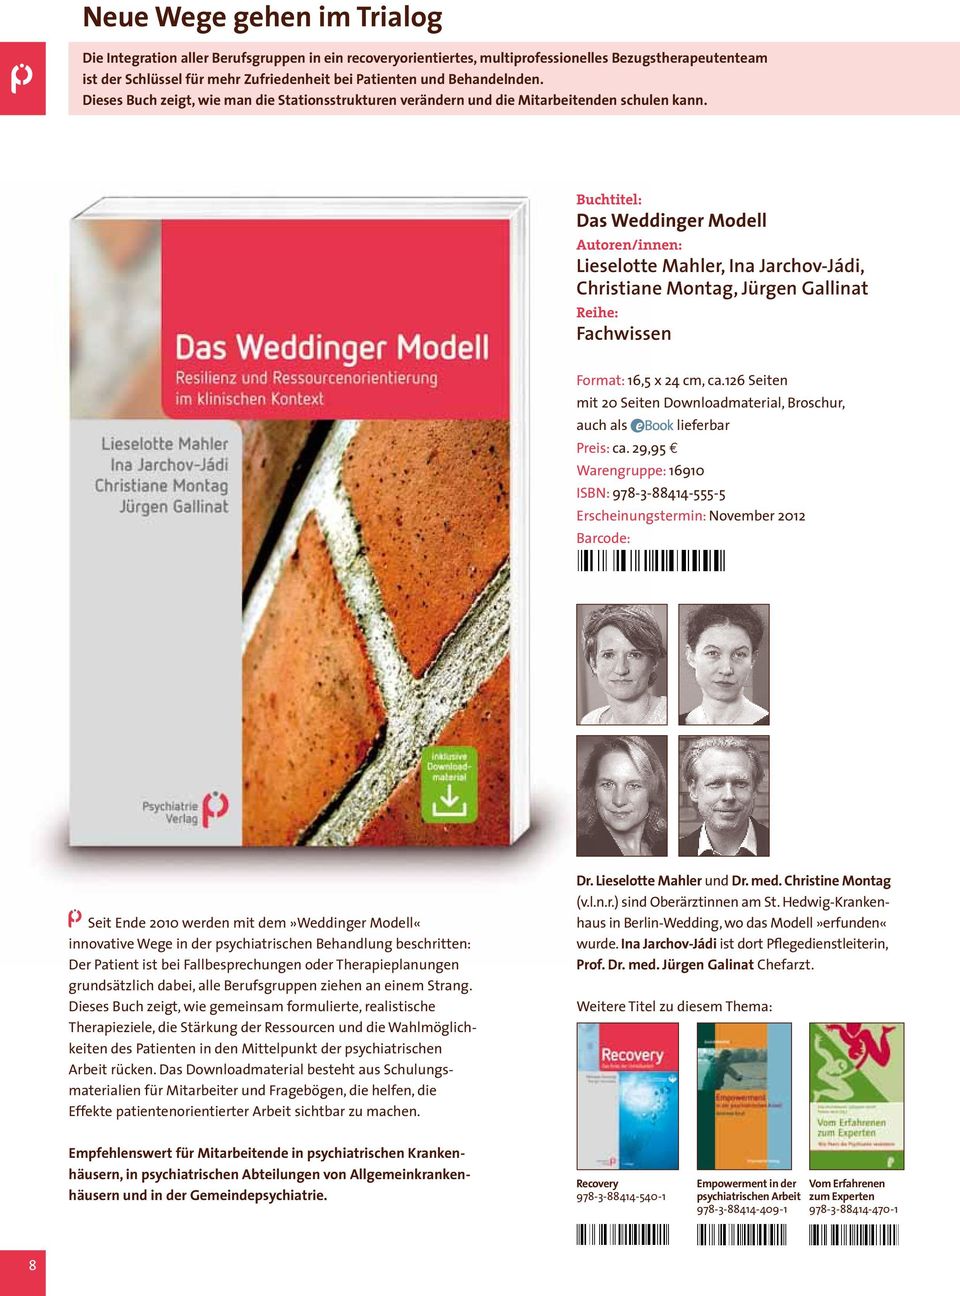 Das Weddinger Modell Autoren/innen: Lieselotte Mahler, Ina Jarchov-Jádi, Christiane Montag, Jürgen Gallinat Fachwissen Format: 16,5 x 24 cm, ca.